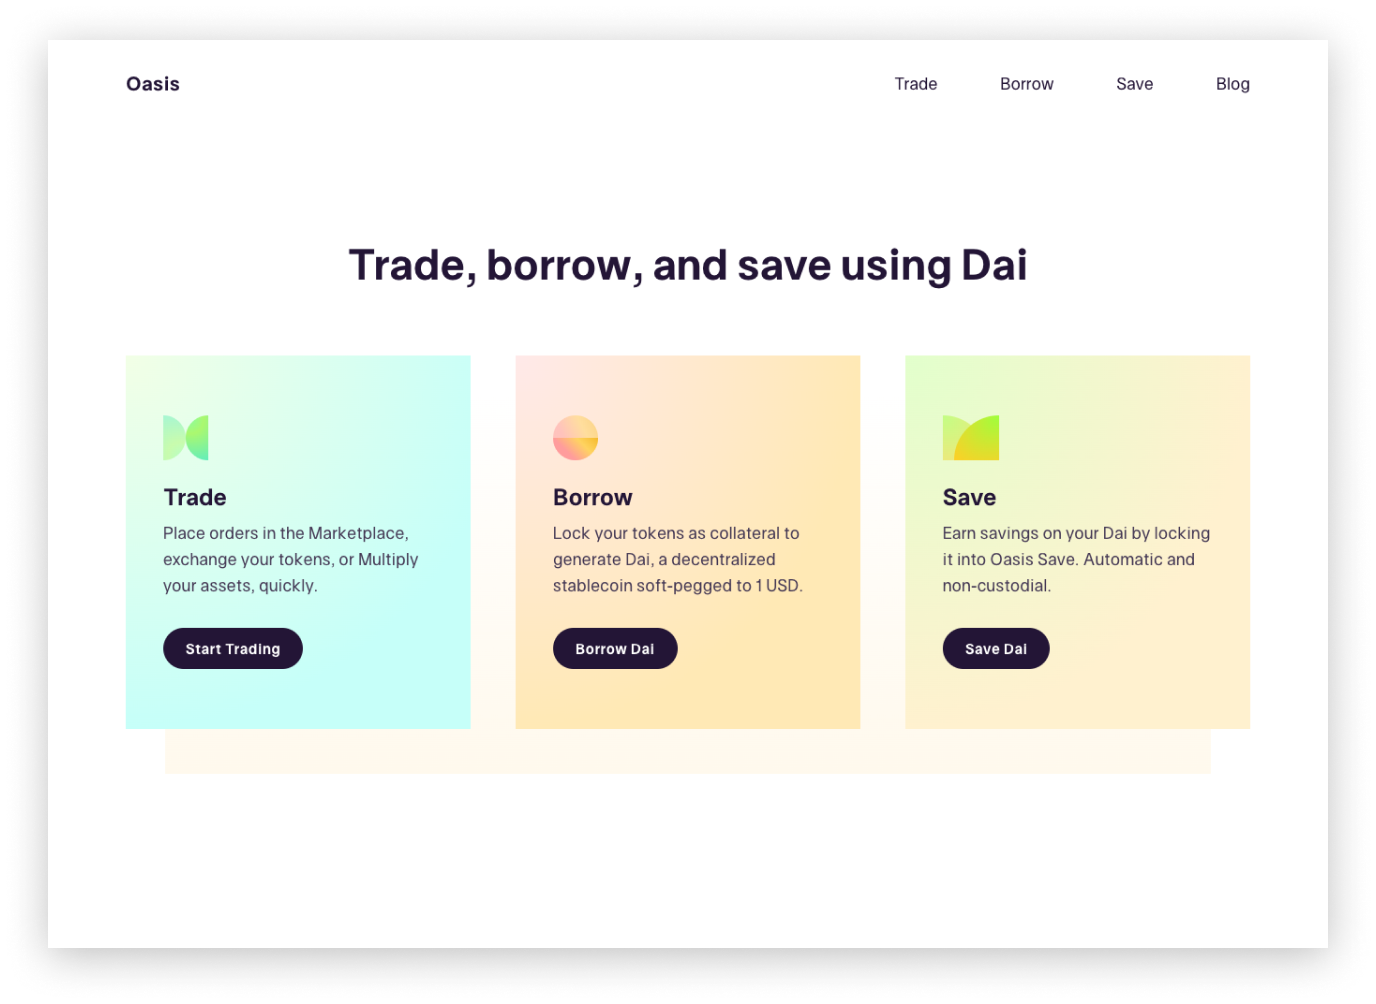 Maker webpage "Trage, borrow, and save using DAI".